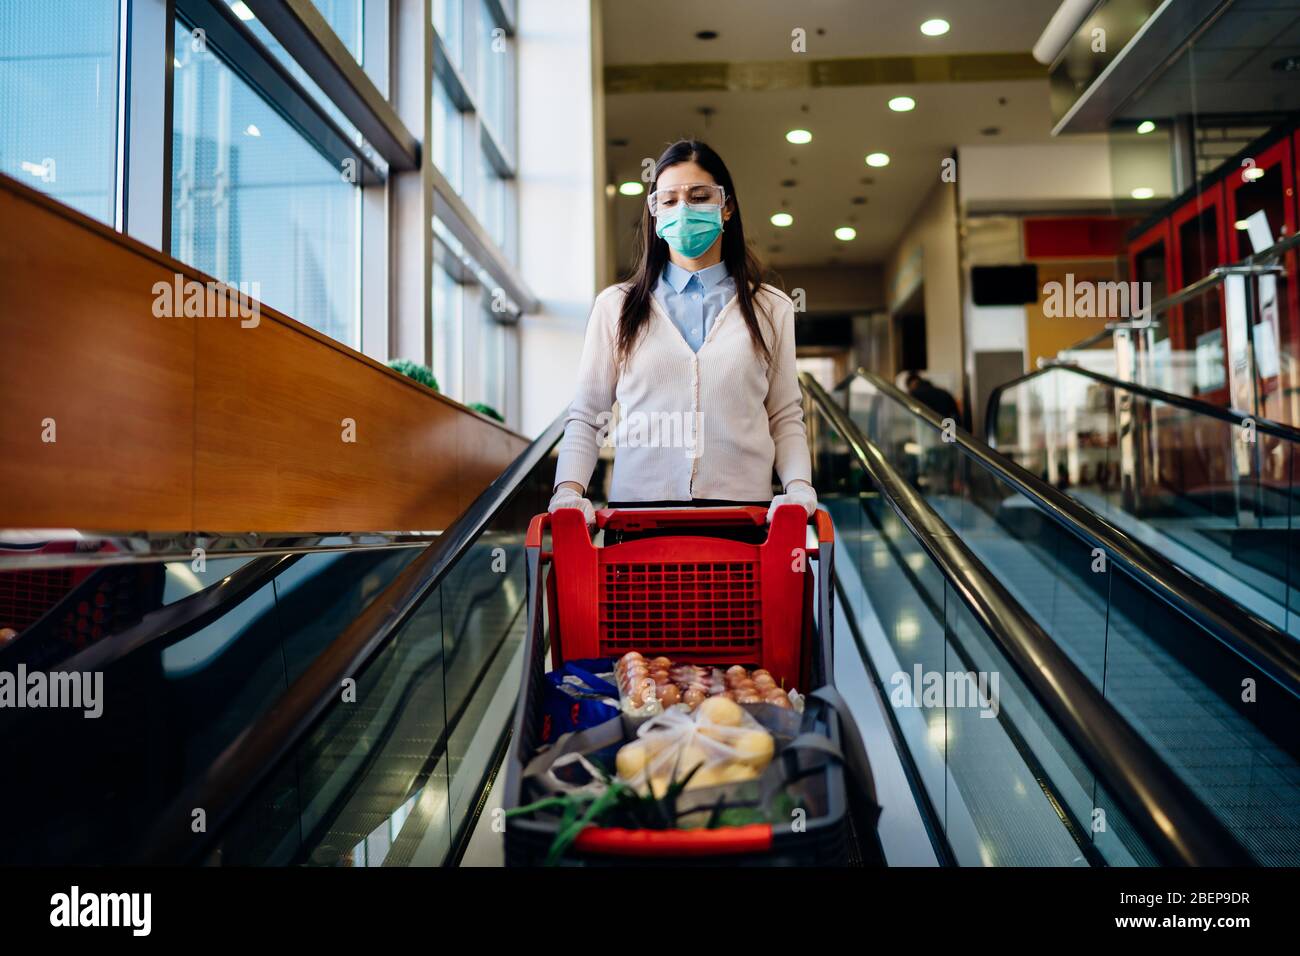 Femme portant des magasins d'épicerie masque dans un supermarché, chariot de poussée.Achat et hoarding de panique alimentaire.Covid-19 stock de quarantaine avec panier.sus Banque D'Images